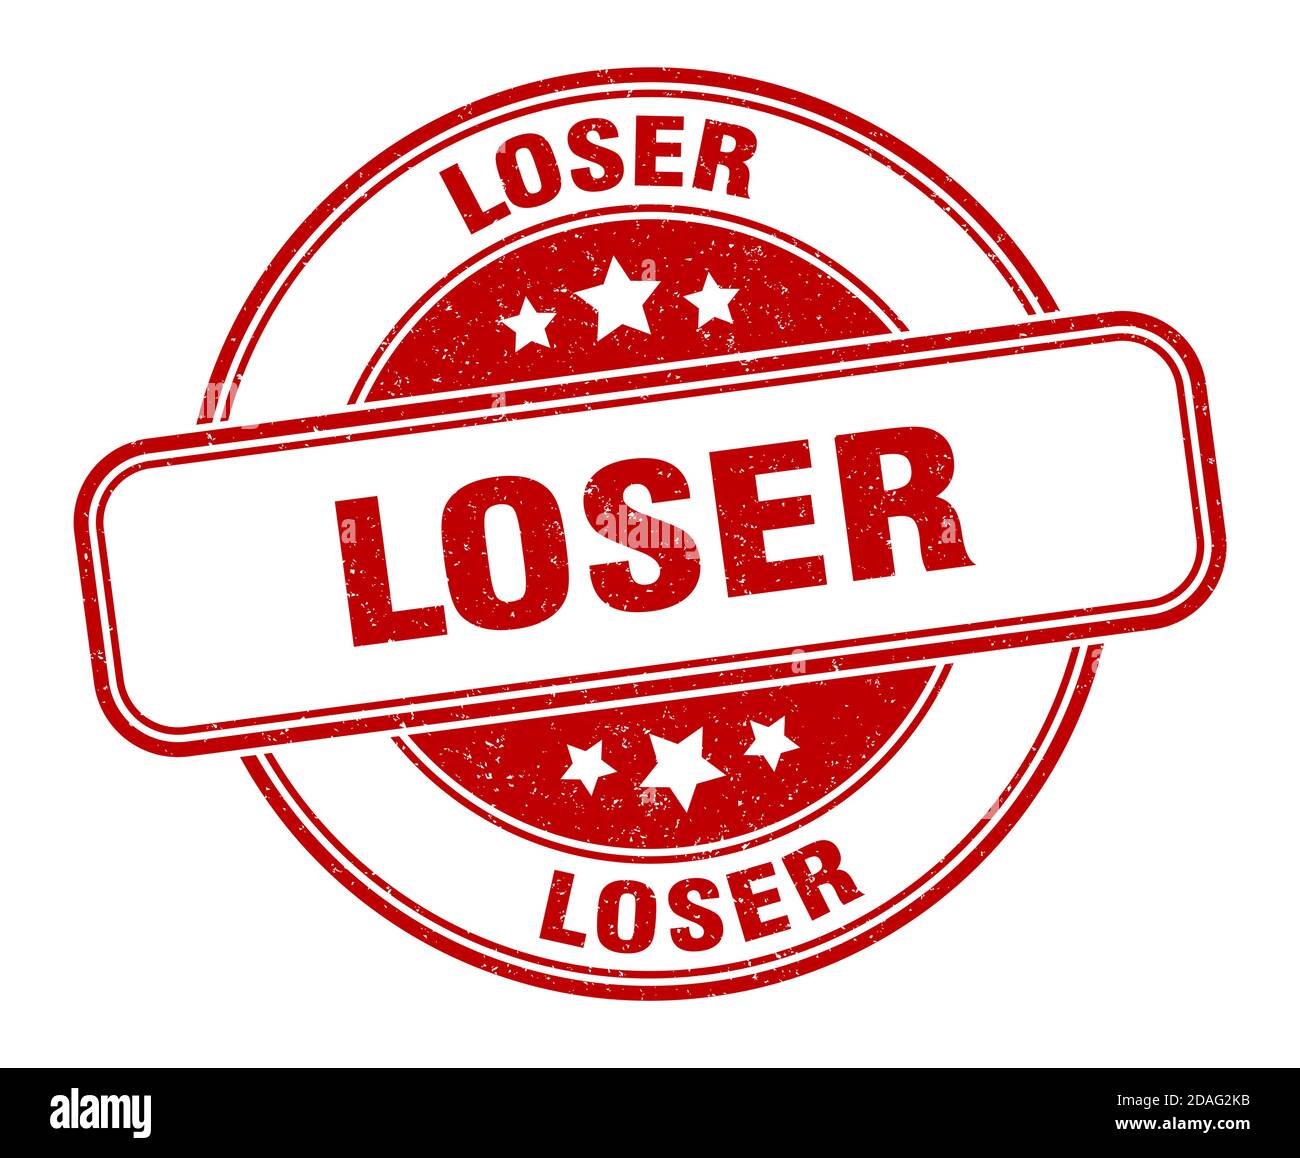 loser stamp. loser sign. round grunge label Stock Vector Image & Art ...